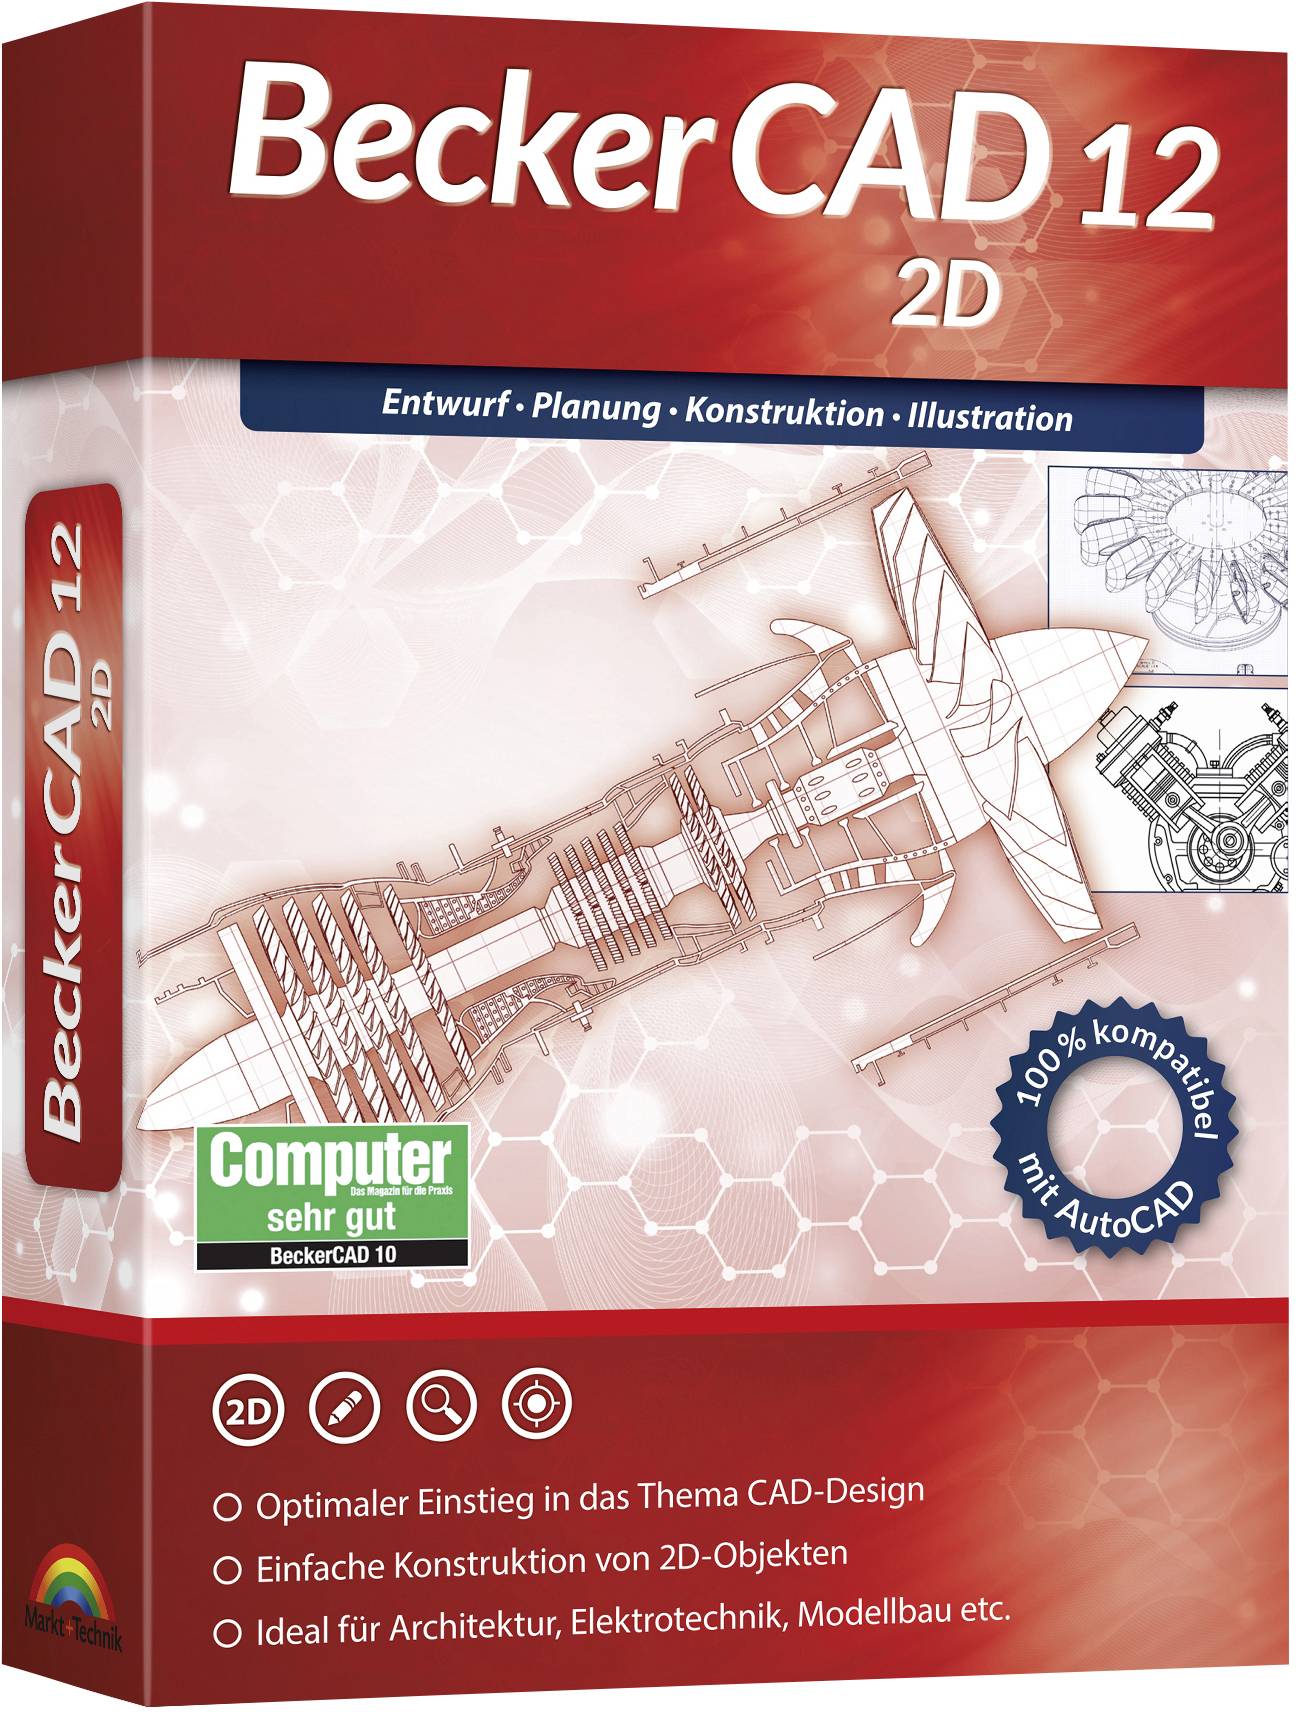 MARKT & TECHNIK BeckerCAD 12 2D Vollversion, 1 Lizenz Windows CAD-Software